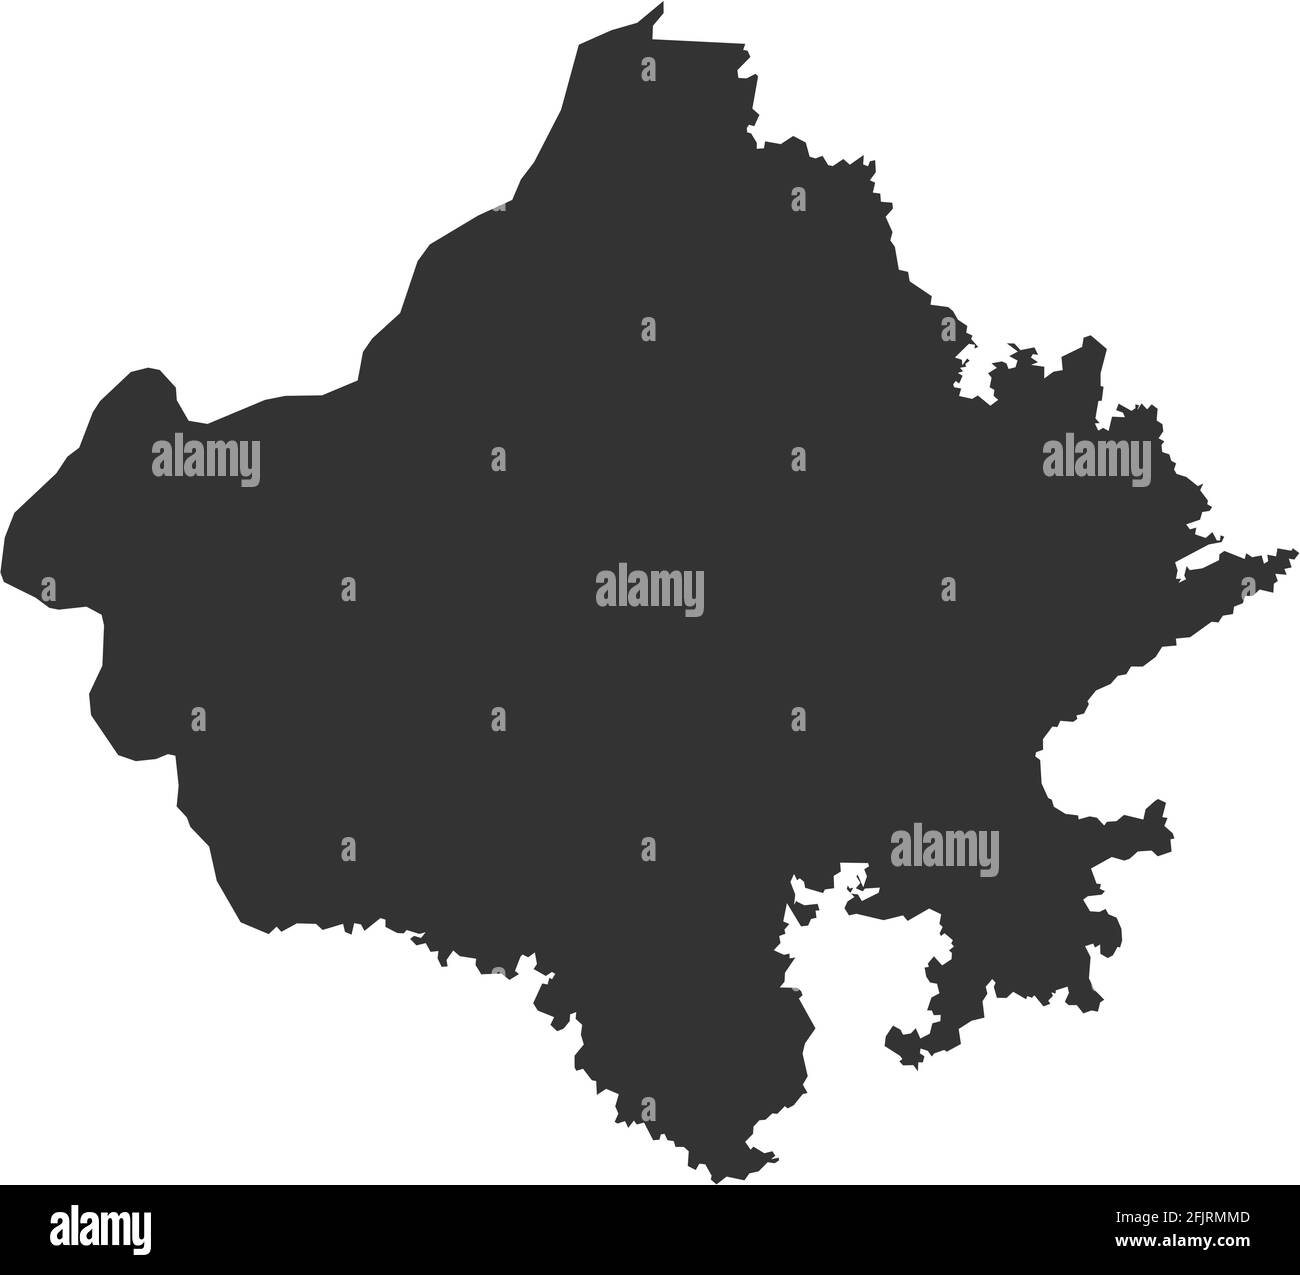 Mappa dello stato indiano del Rajasthan. Sfondo grigio scuro. Progettazione grafica dei concetti aziendali. Illustrazione Vettoriale